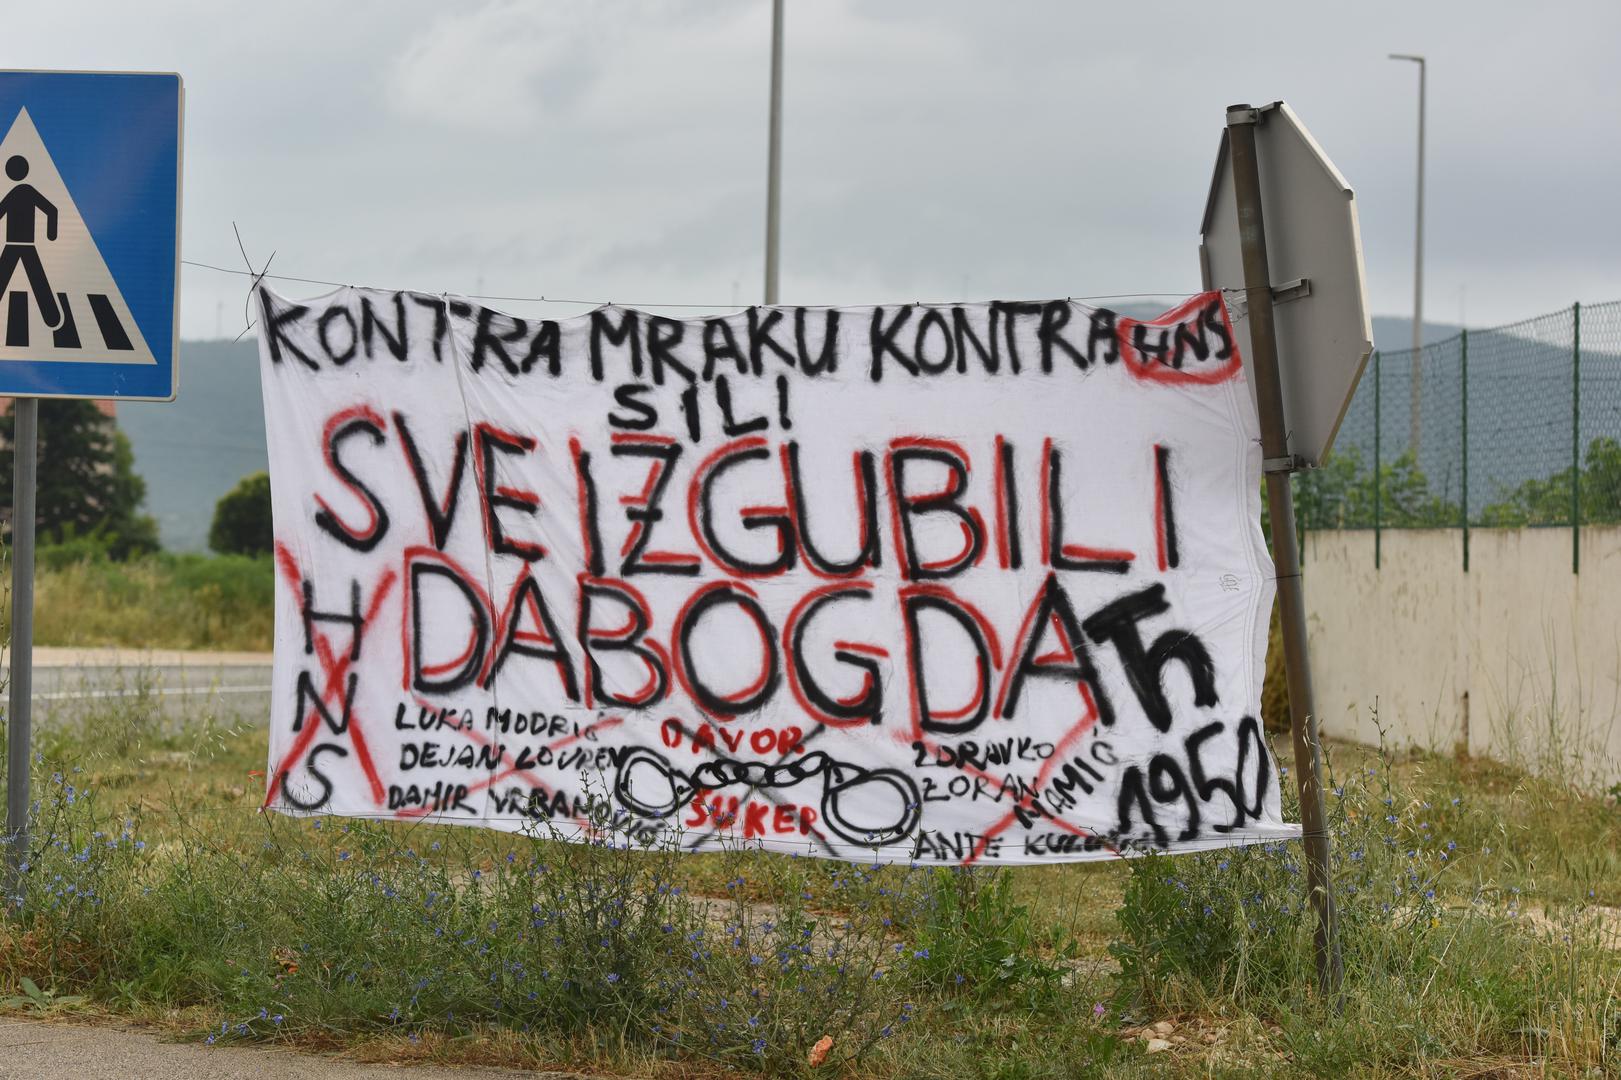 "Sve izgubili dabogda", stoji na transparentu protiv nogometne reprezentacije i HNS-a koji je danas osvanuo u Konjevratima kraj Šibenika